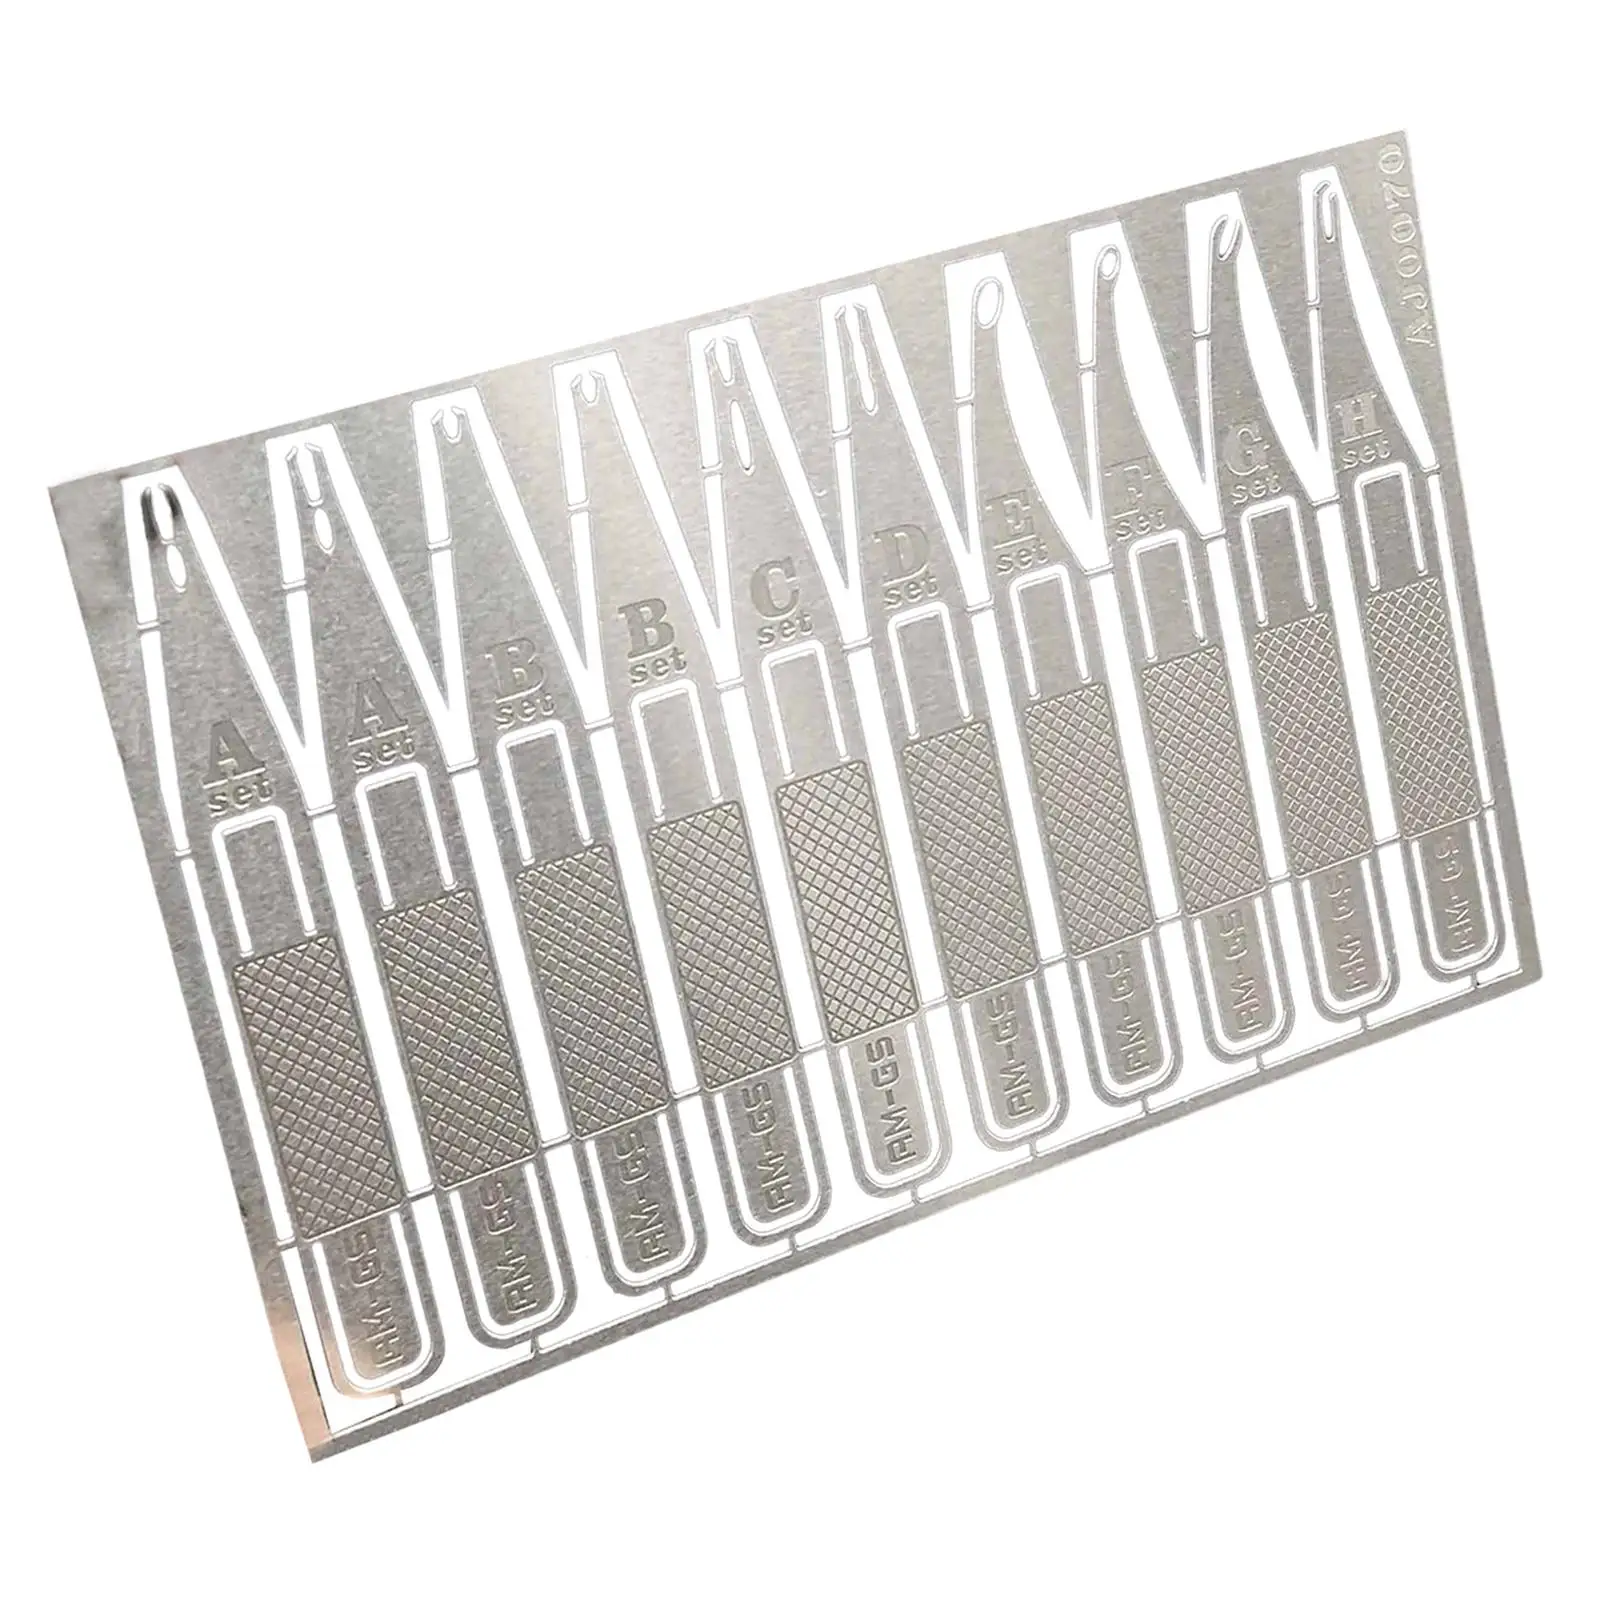 Metal Precision Glue Micro Tips for Lab Dispensing General Repair Adhesive